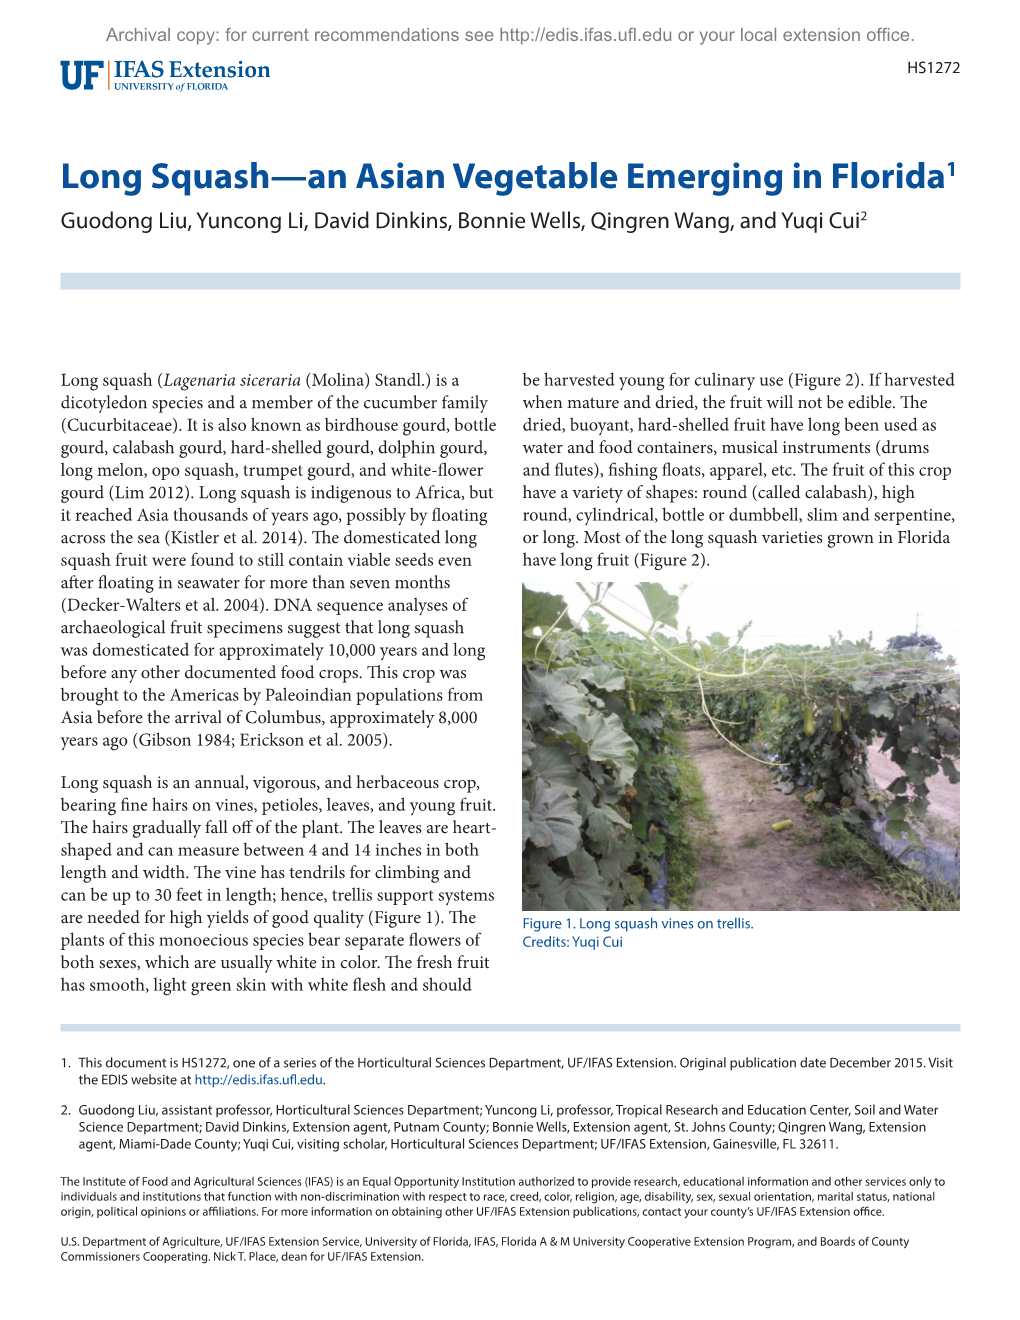 Long Squash—An Asian Vegetable Emerging in Florida1 Guodong Liu, Yuncong Li, David Dinkins, Bonnie Wells, Qingren Wang, and Yuqi Cui2